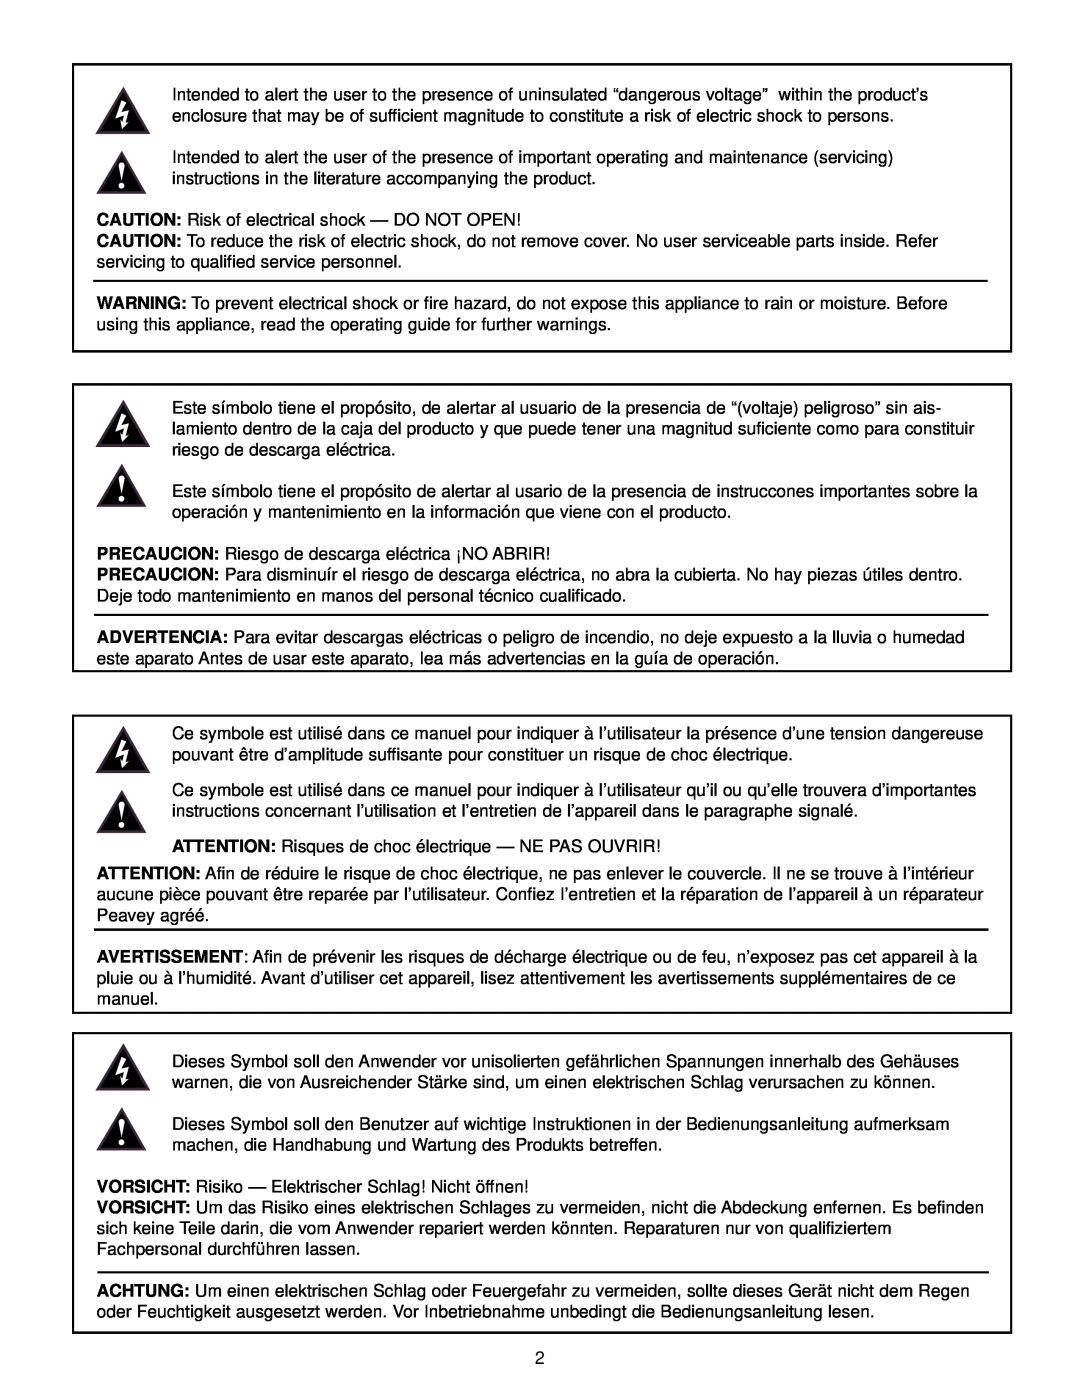 Peavey RQ 4300 Series CAUTION Risk of electrical shock - DO NOT OPEN, PRECAUCION Riesgo de descarga eléctrica ¡NO ABRIR 